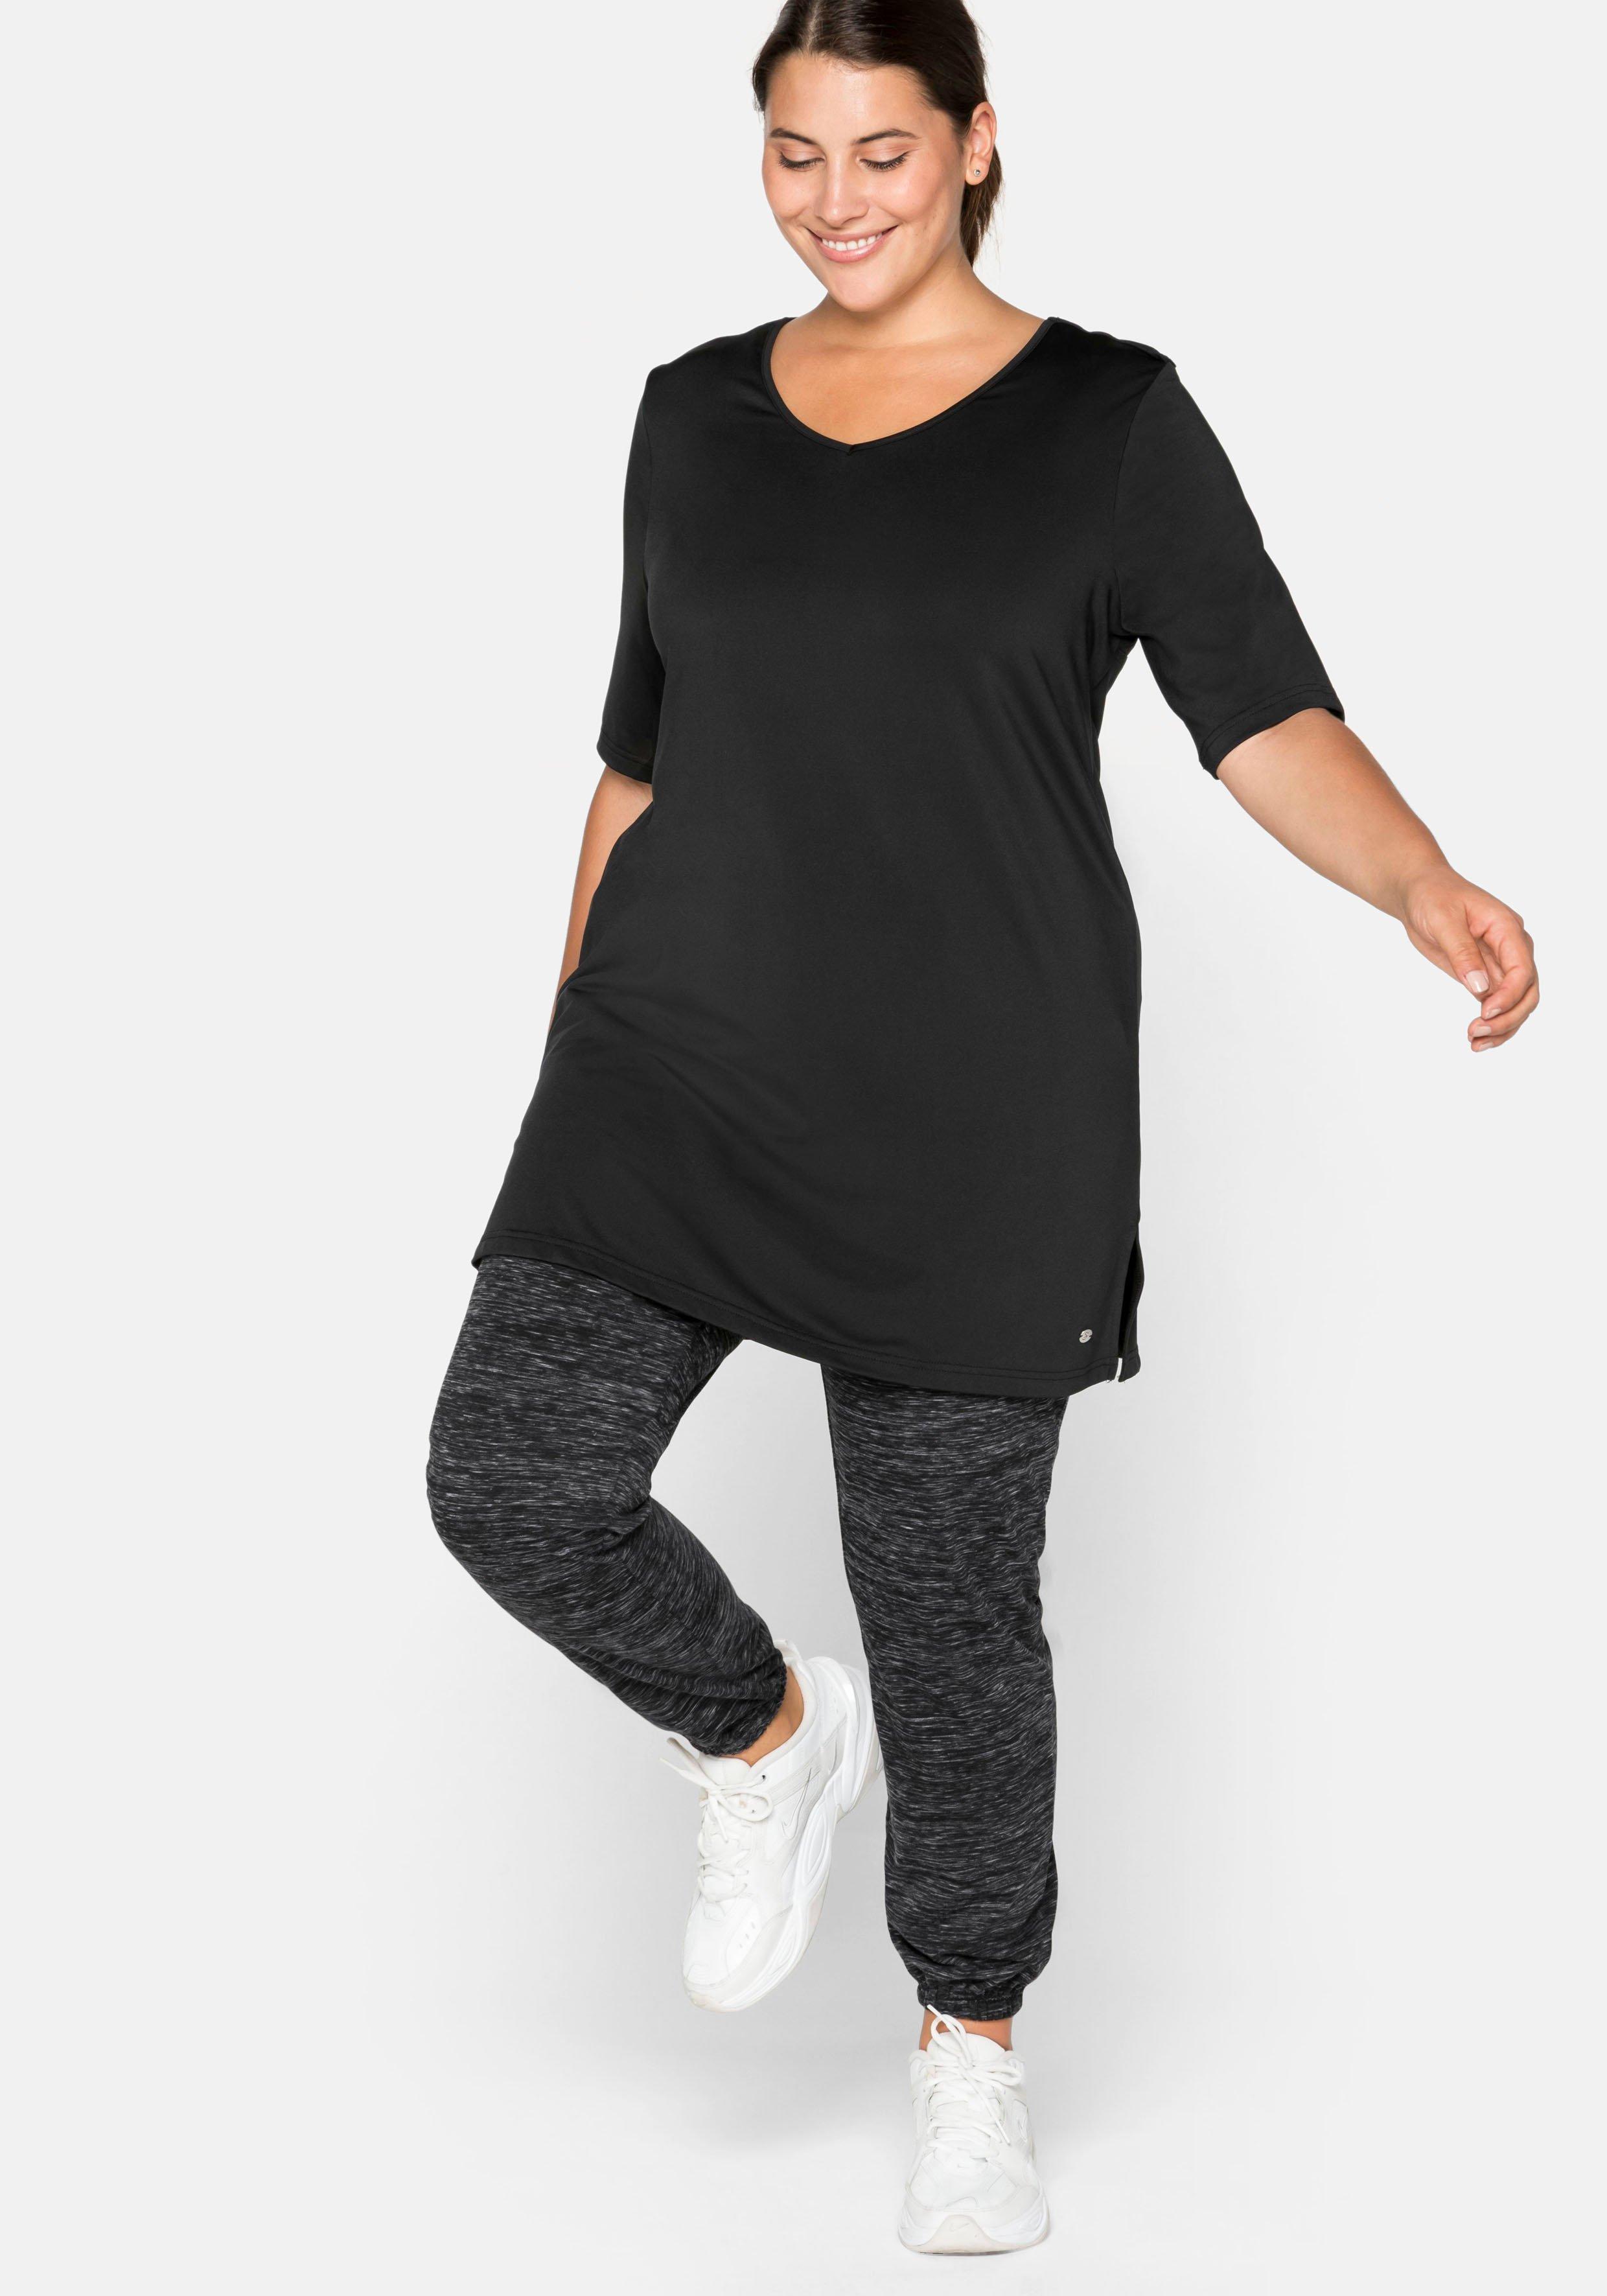 schwarz Sportshirts SHEEGO große Größen Damen Plus Size | Mode ♥ sheego